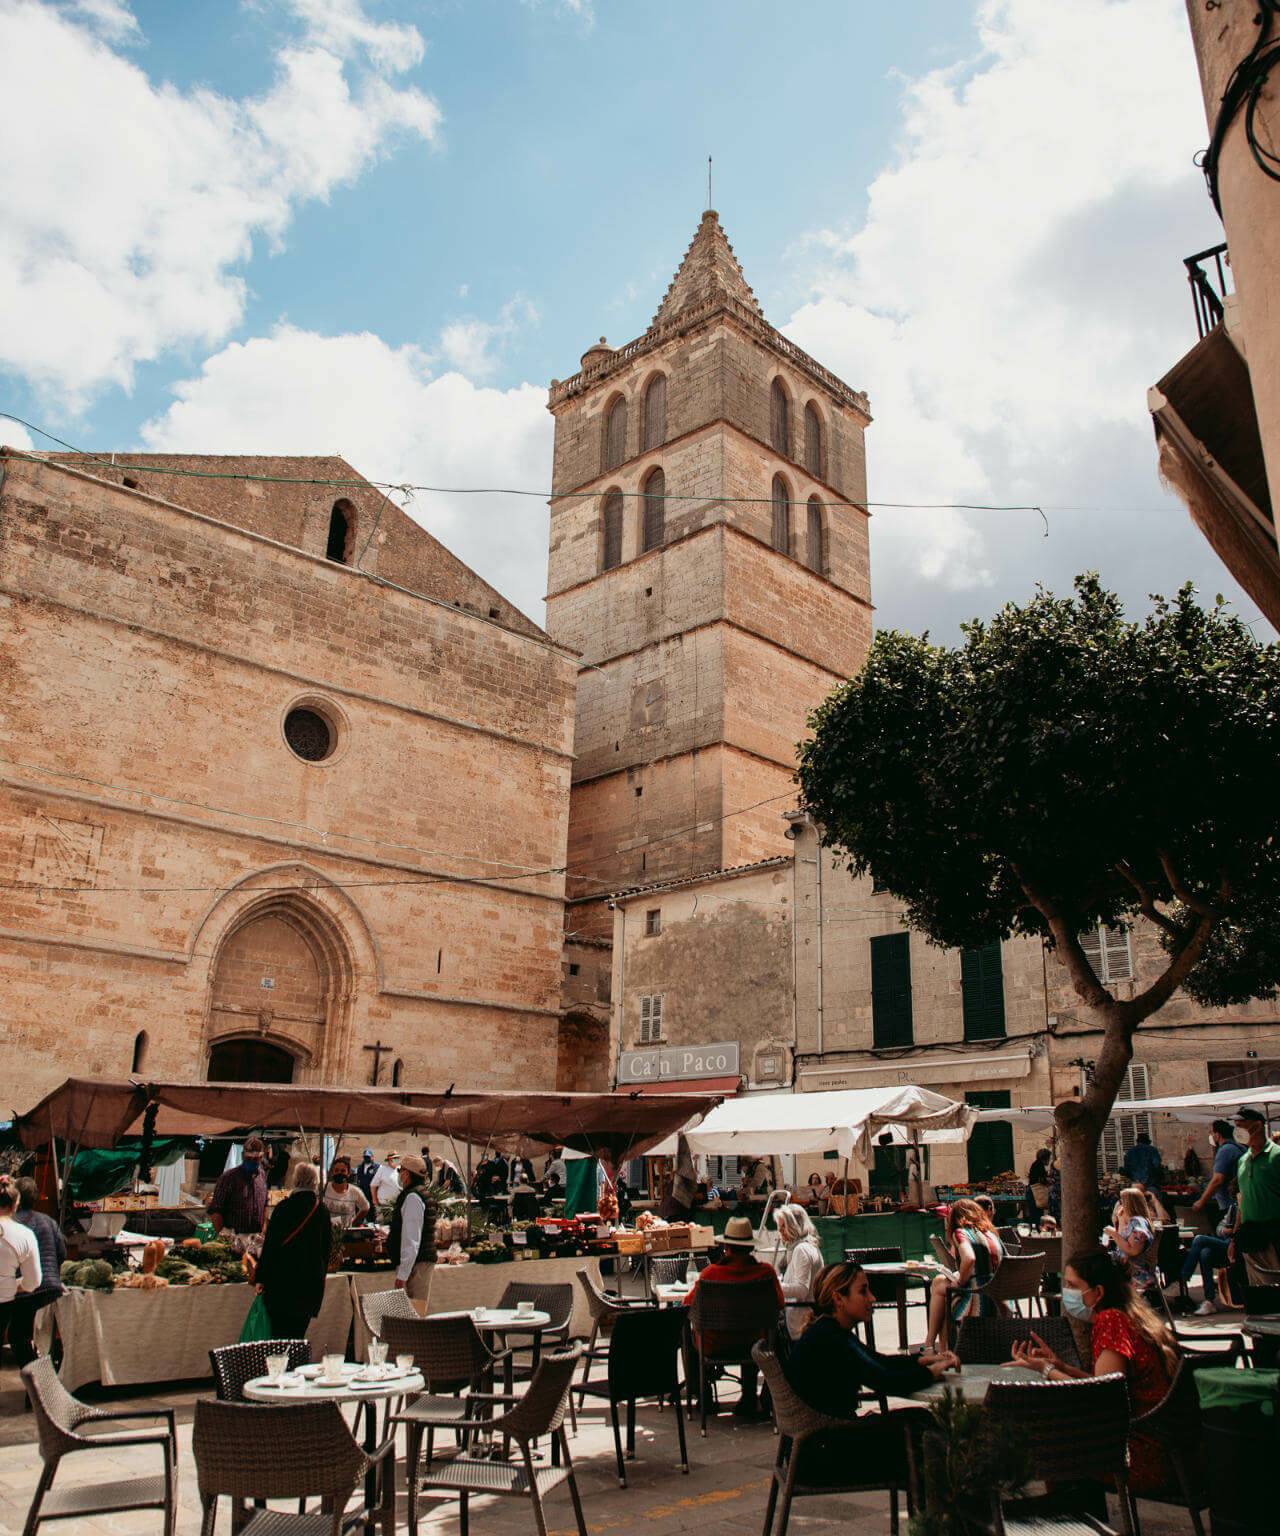 Ein gut besuchtes Café auf dem Wochenmarkt von Sineu auf Mallorca mit einem Gemüsestand und altertümlichen Gebäuden im Hintergrund.